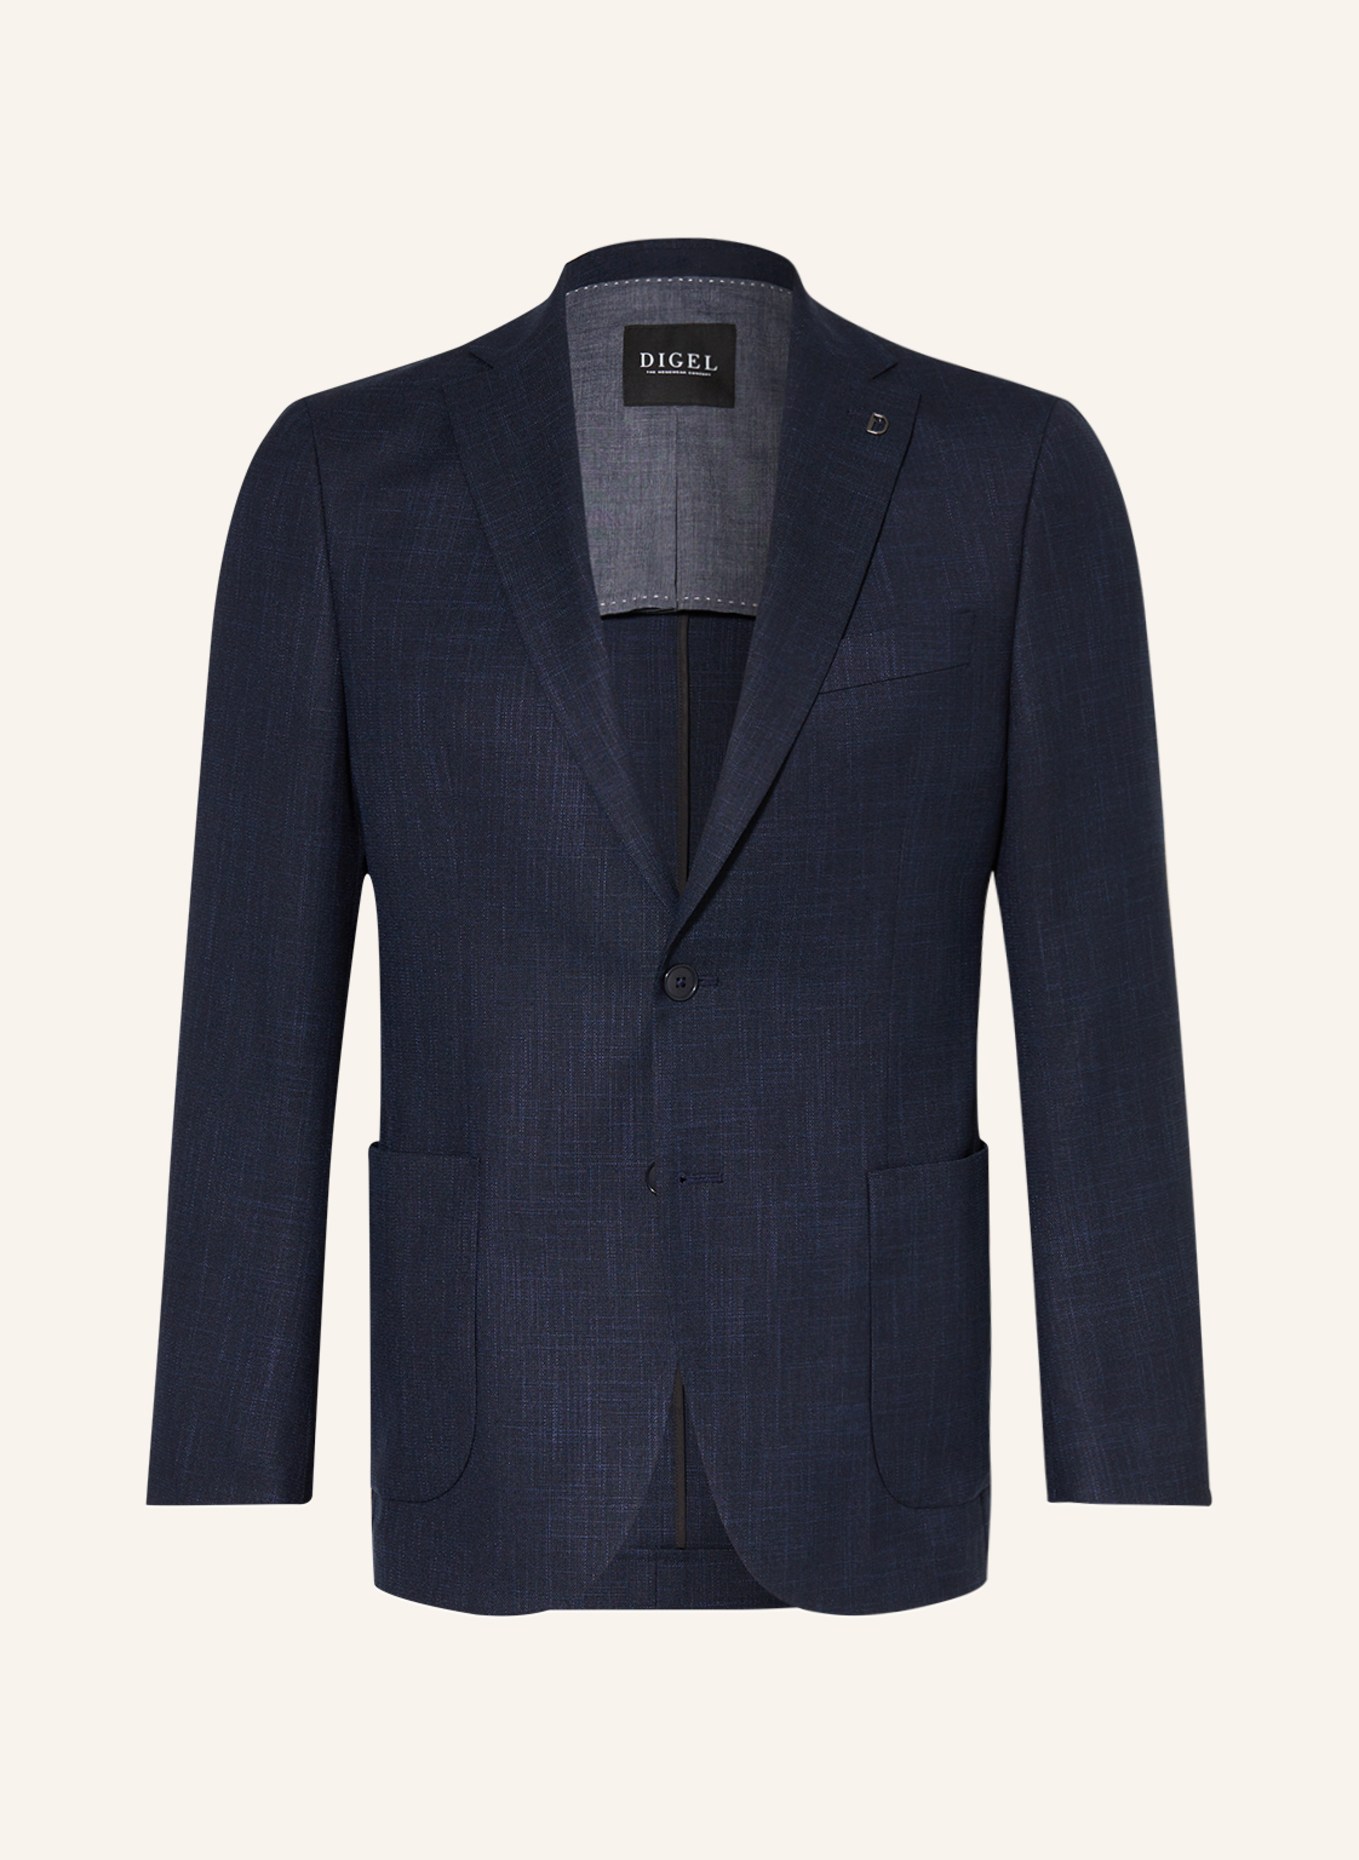 DIGEL Suit jacket EDWARD modern fit, Color: 22 BLAU (Image 1)